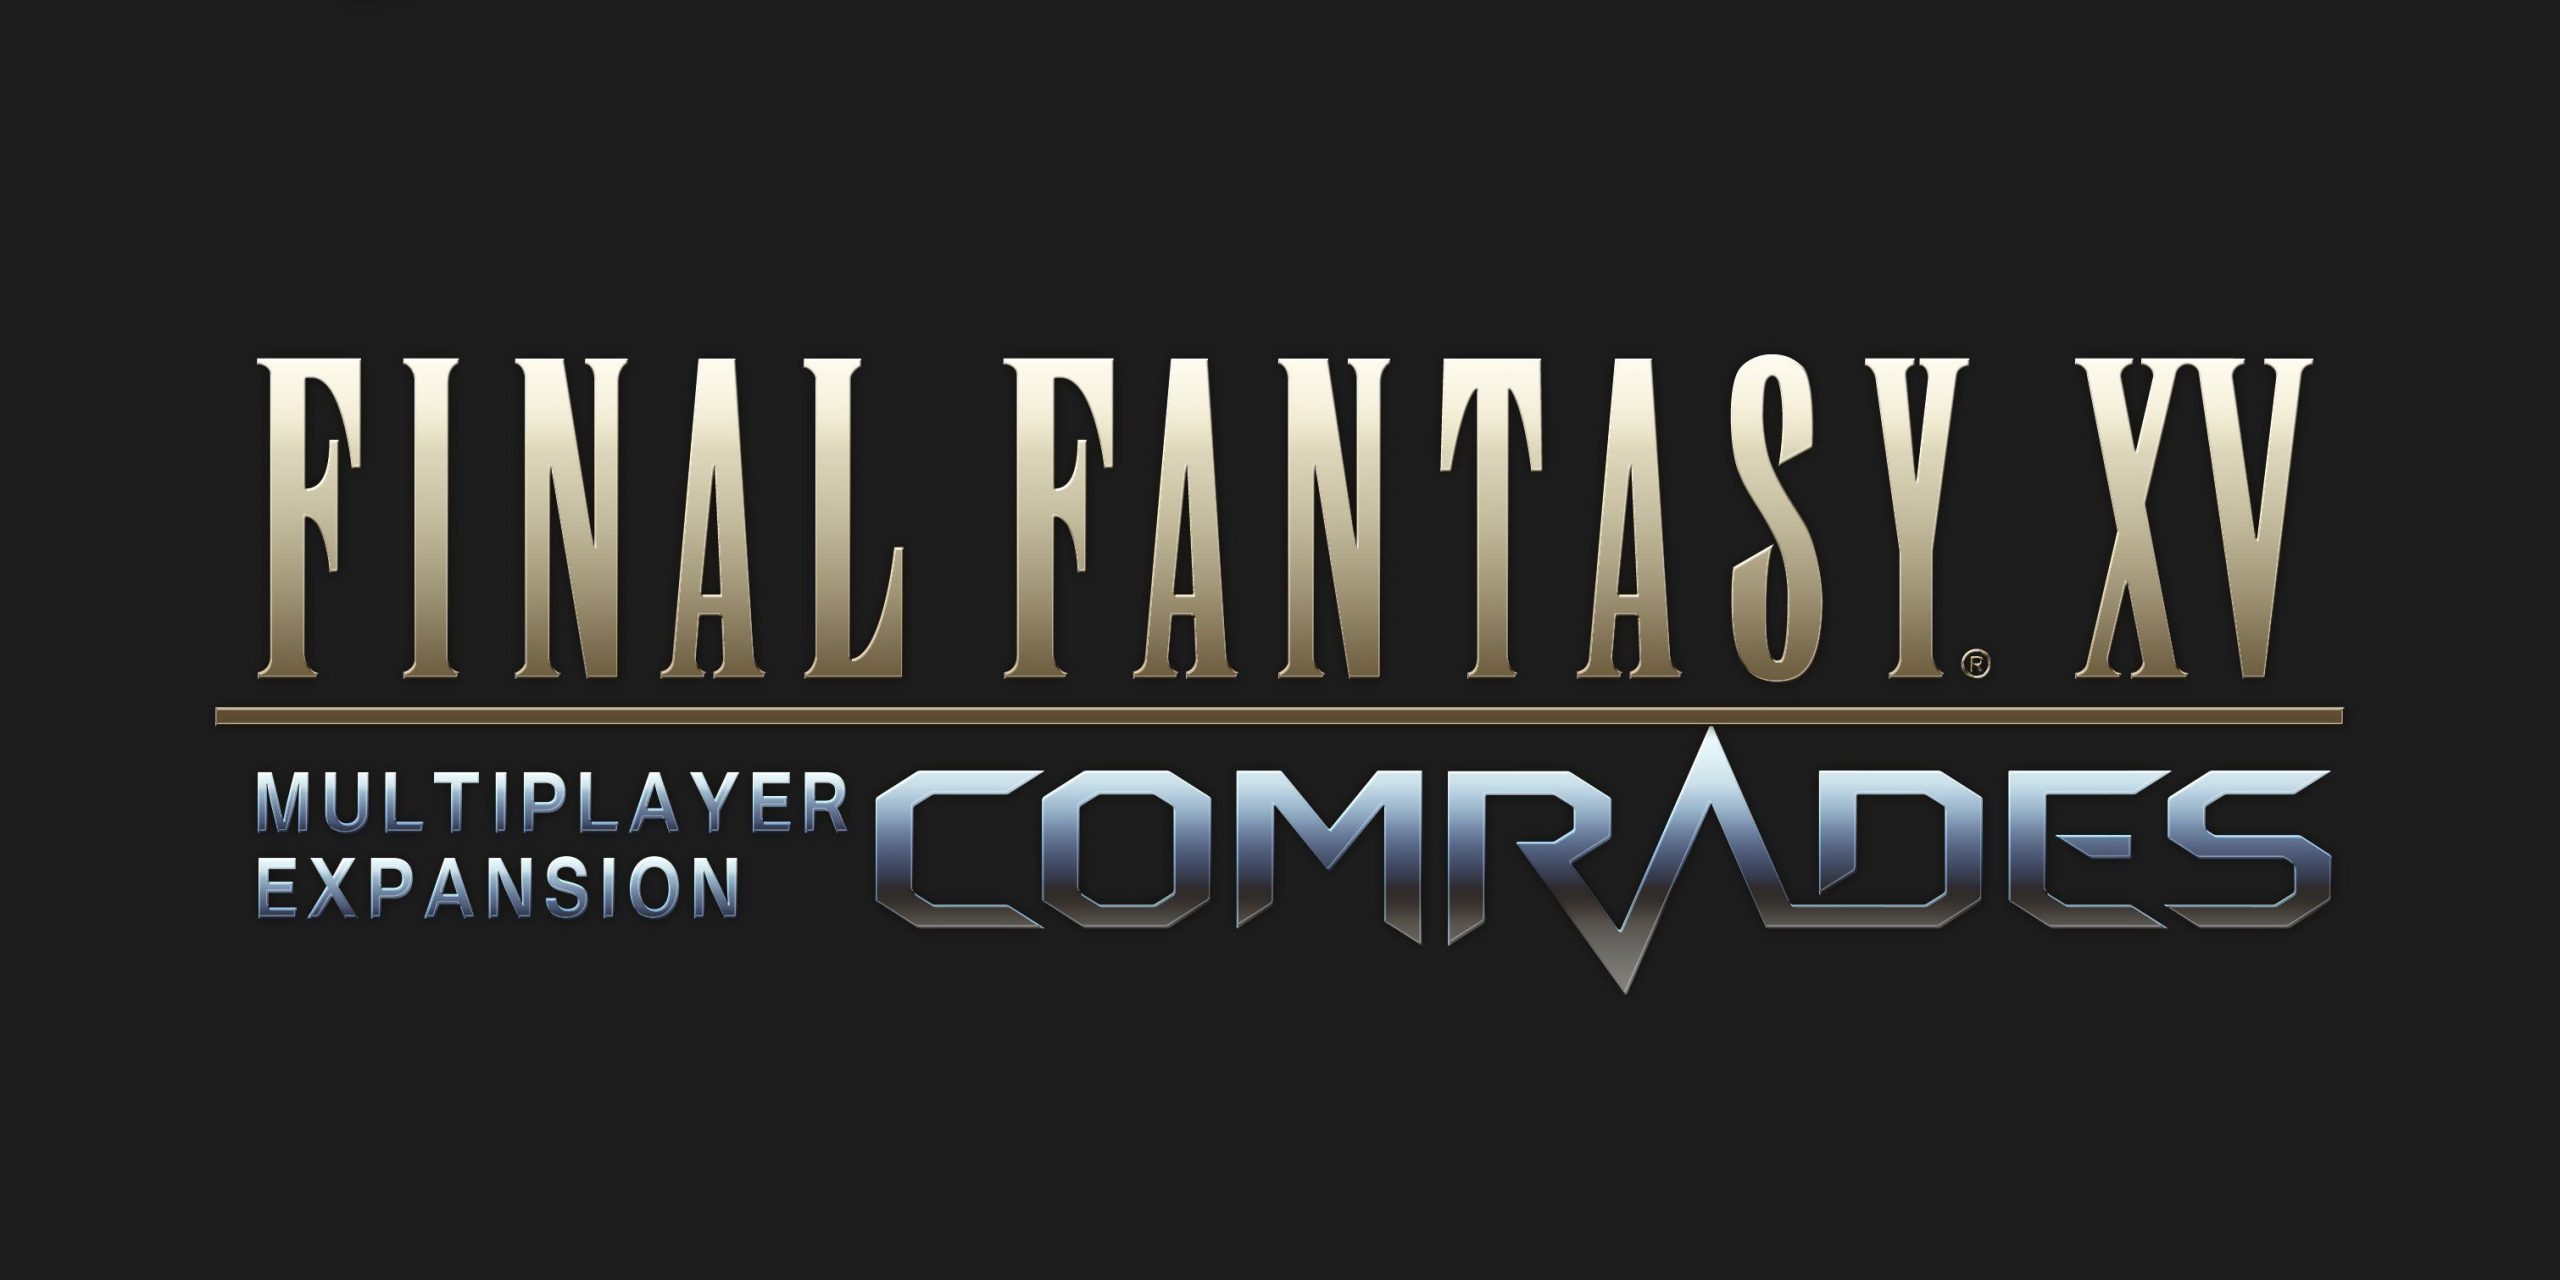 Llega a Final Fantasy XV la expansión multijugador “Comrades”